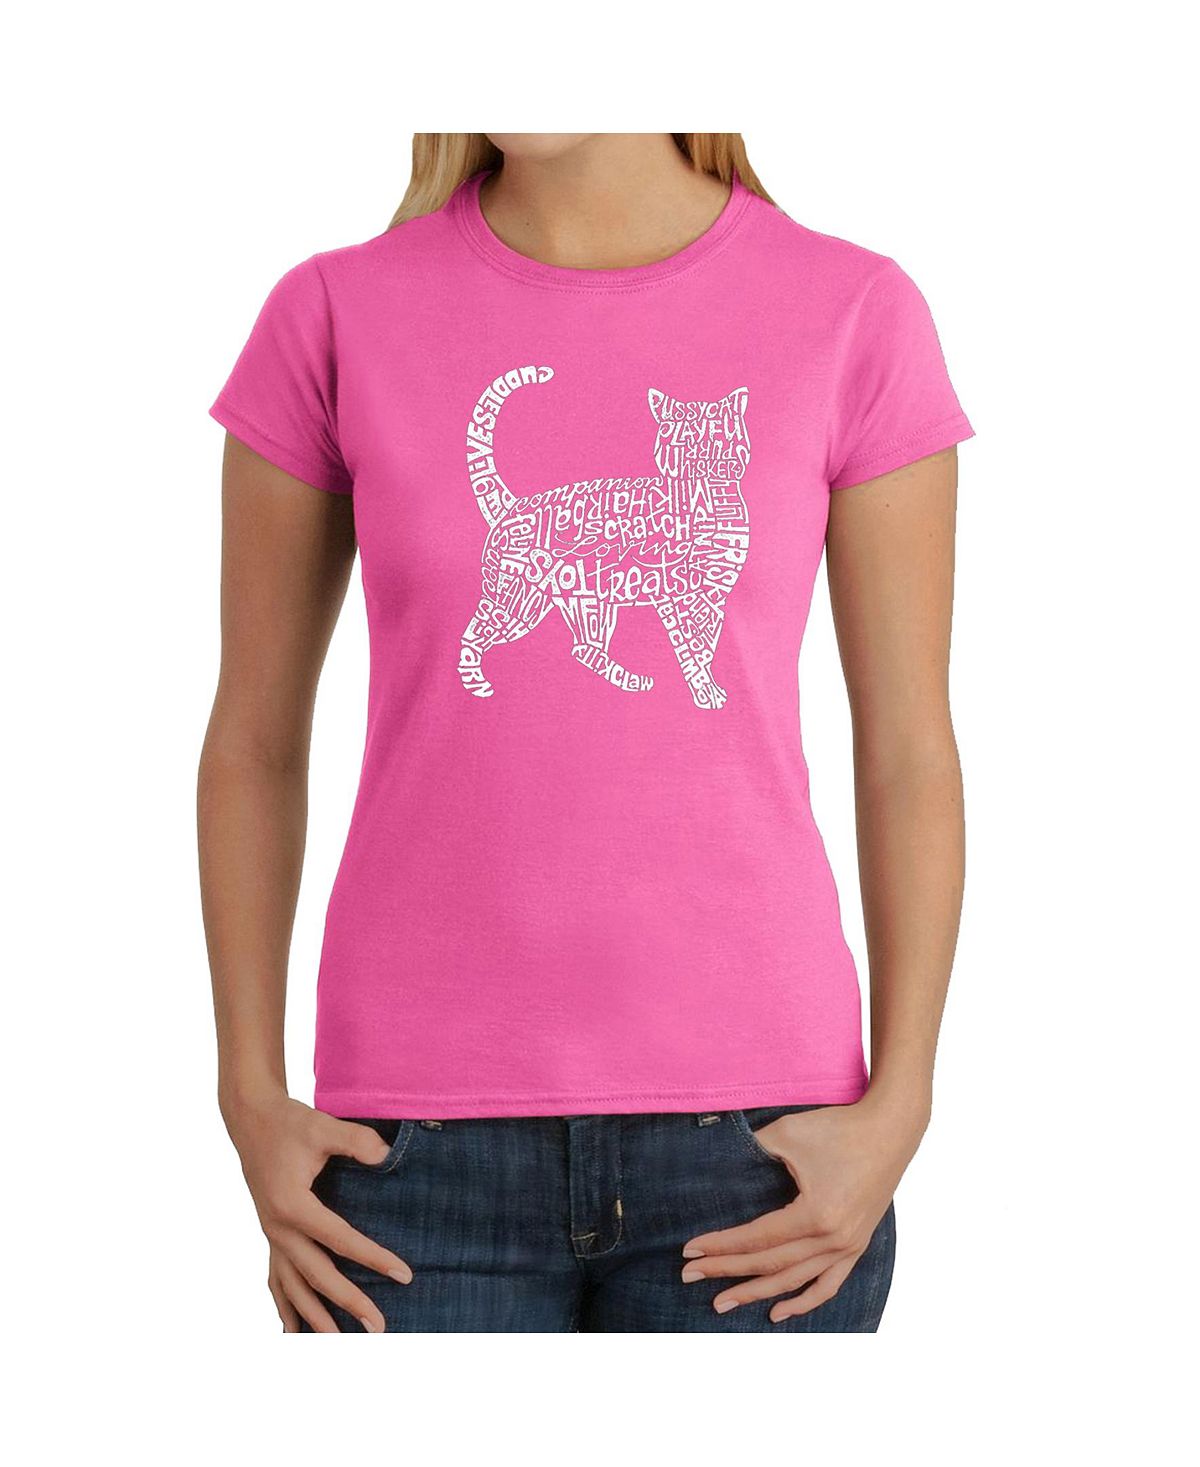 Женская футболка word art - кошка LA Pop Art, розовый